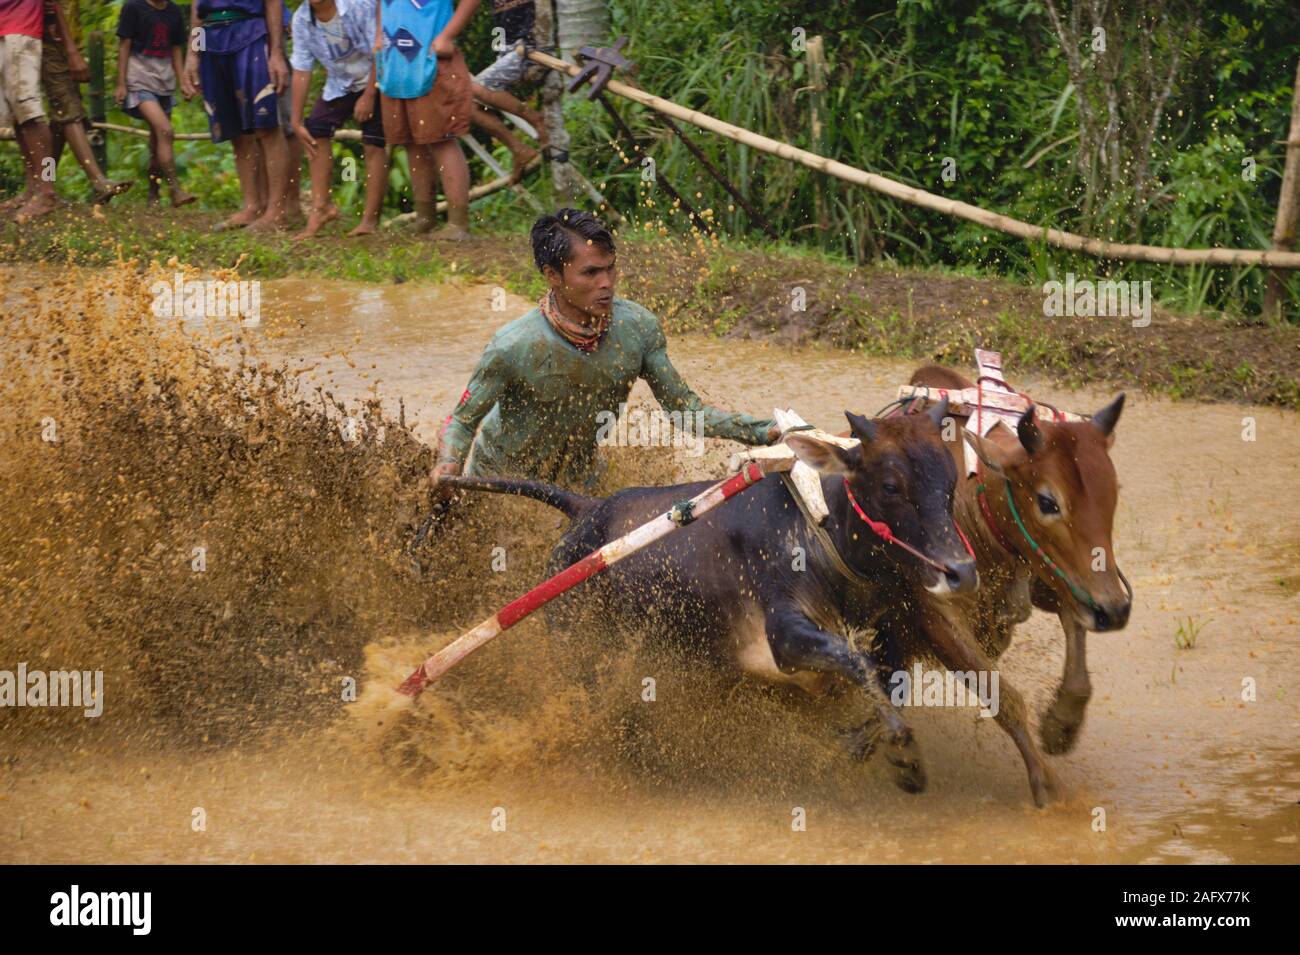 La SSPI jawi 'race' de Bull Bull est une course à l'Ouest de Sumatra. Dans la course, d'un jockey est maintenant une paire de taureaux vaguement lié Banque D'Images